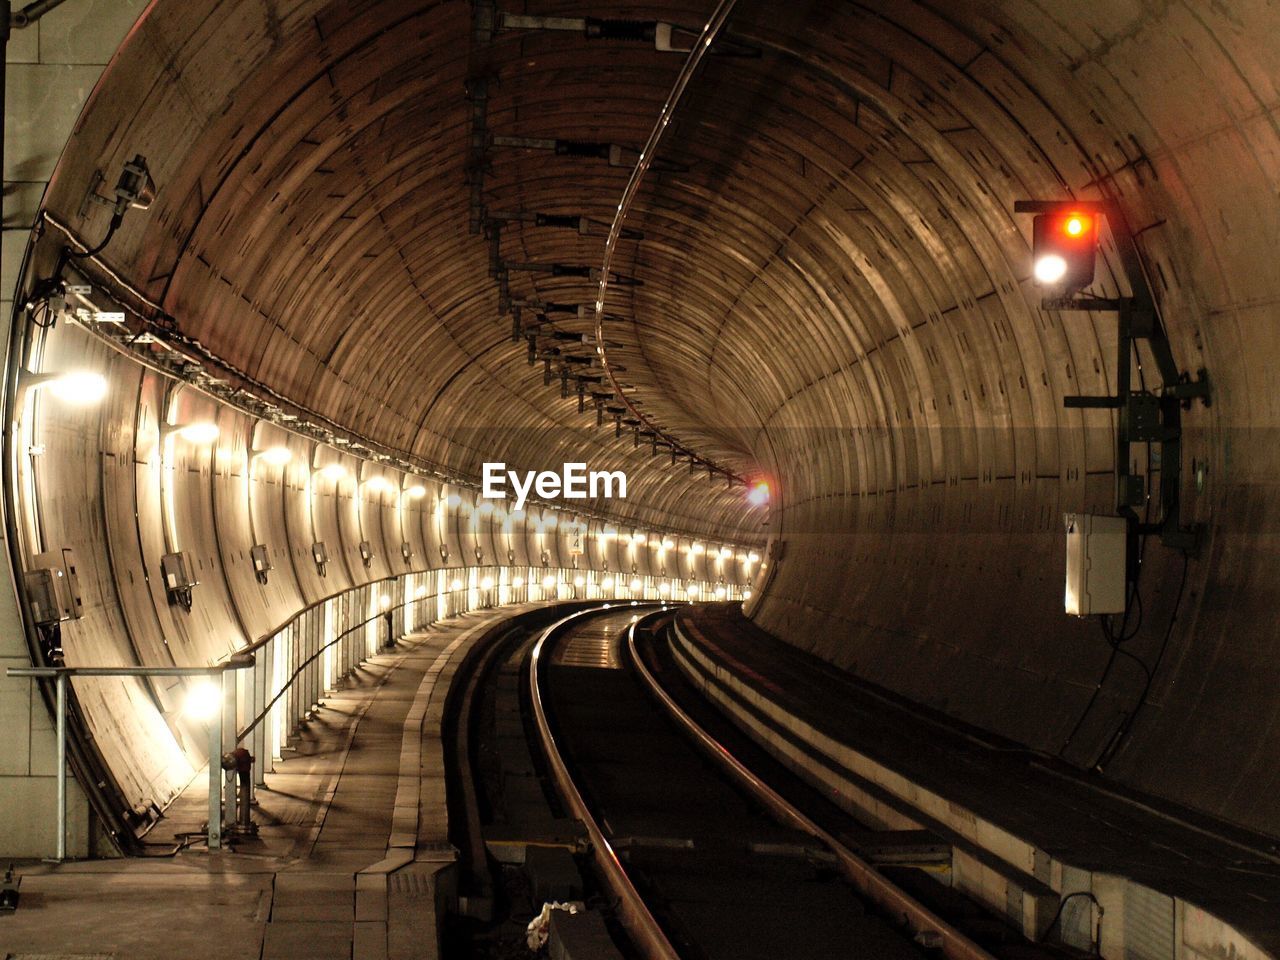 Interior of illuminated railway tunnel